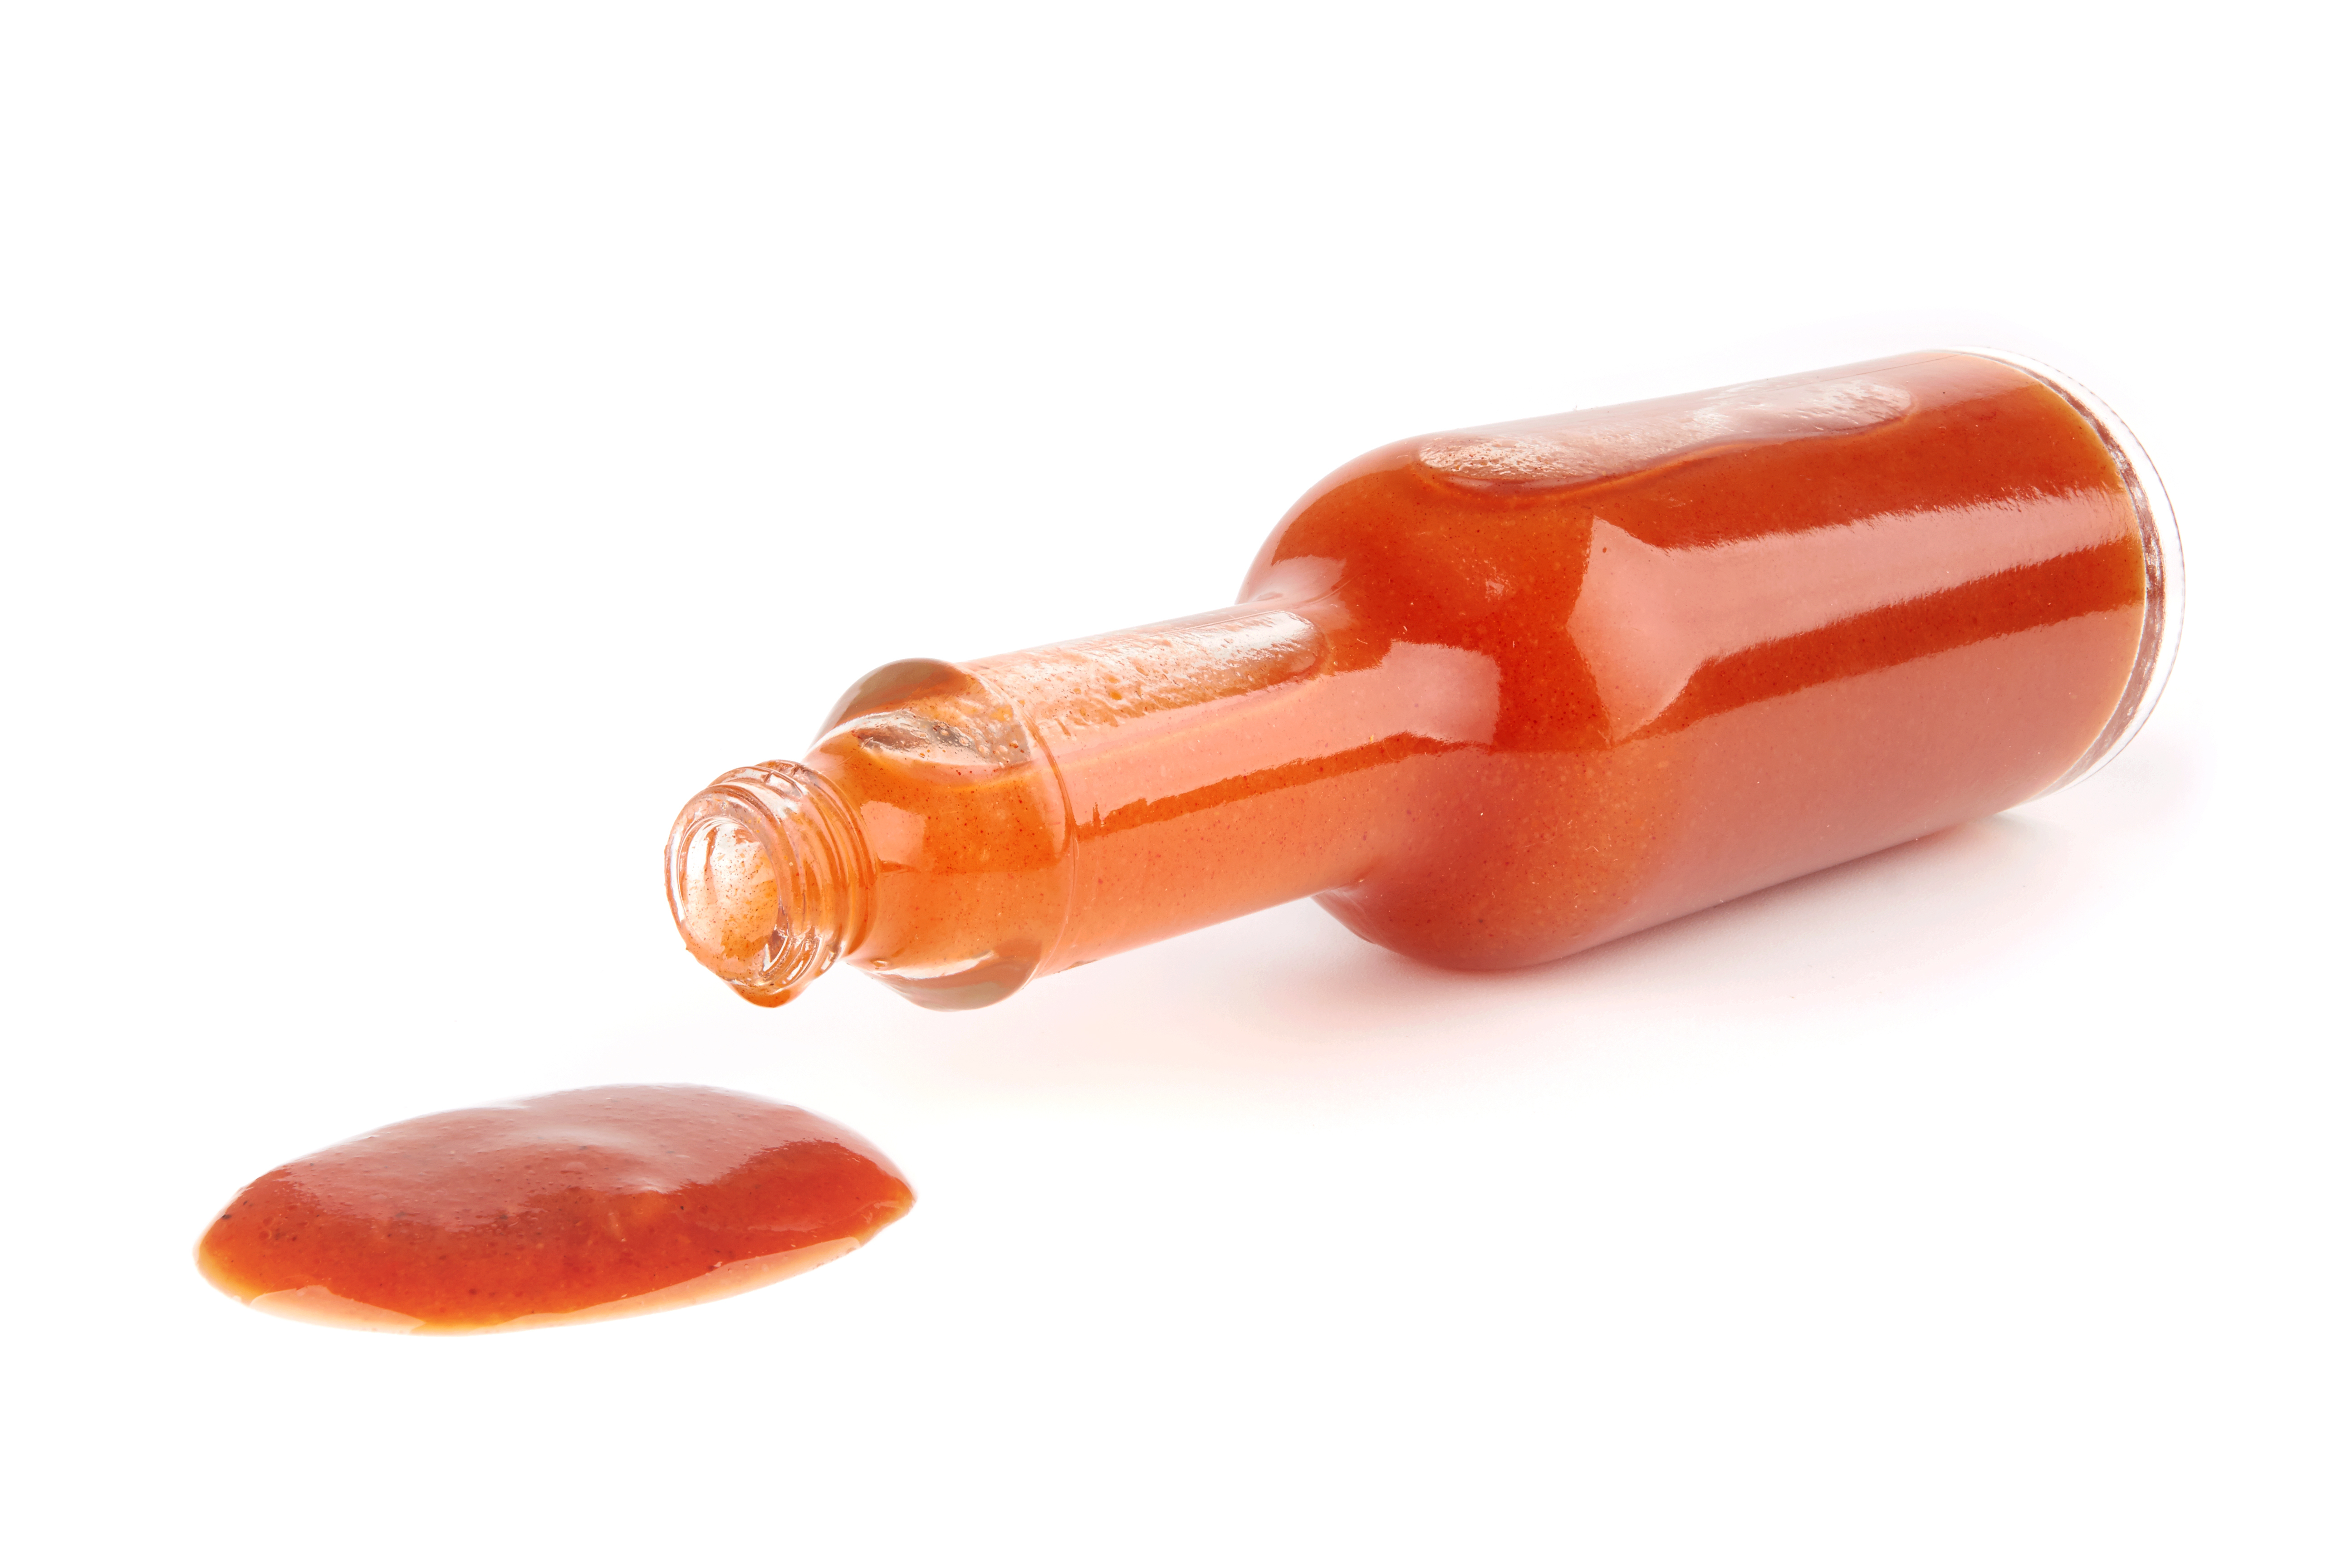 A bottle of hot sauce | Source: Shutterstock